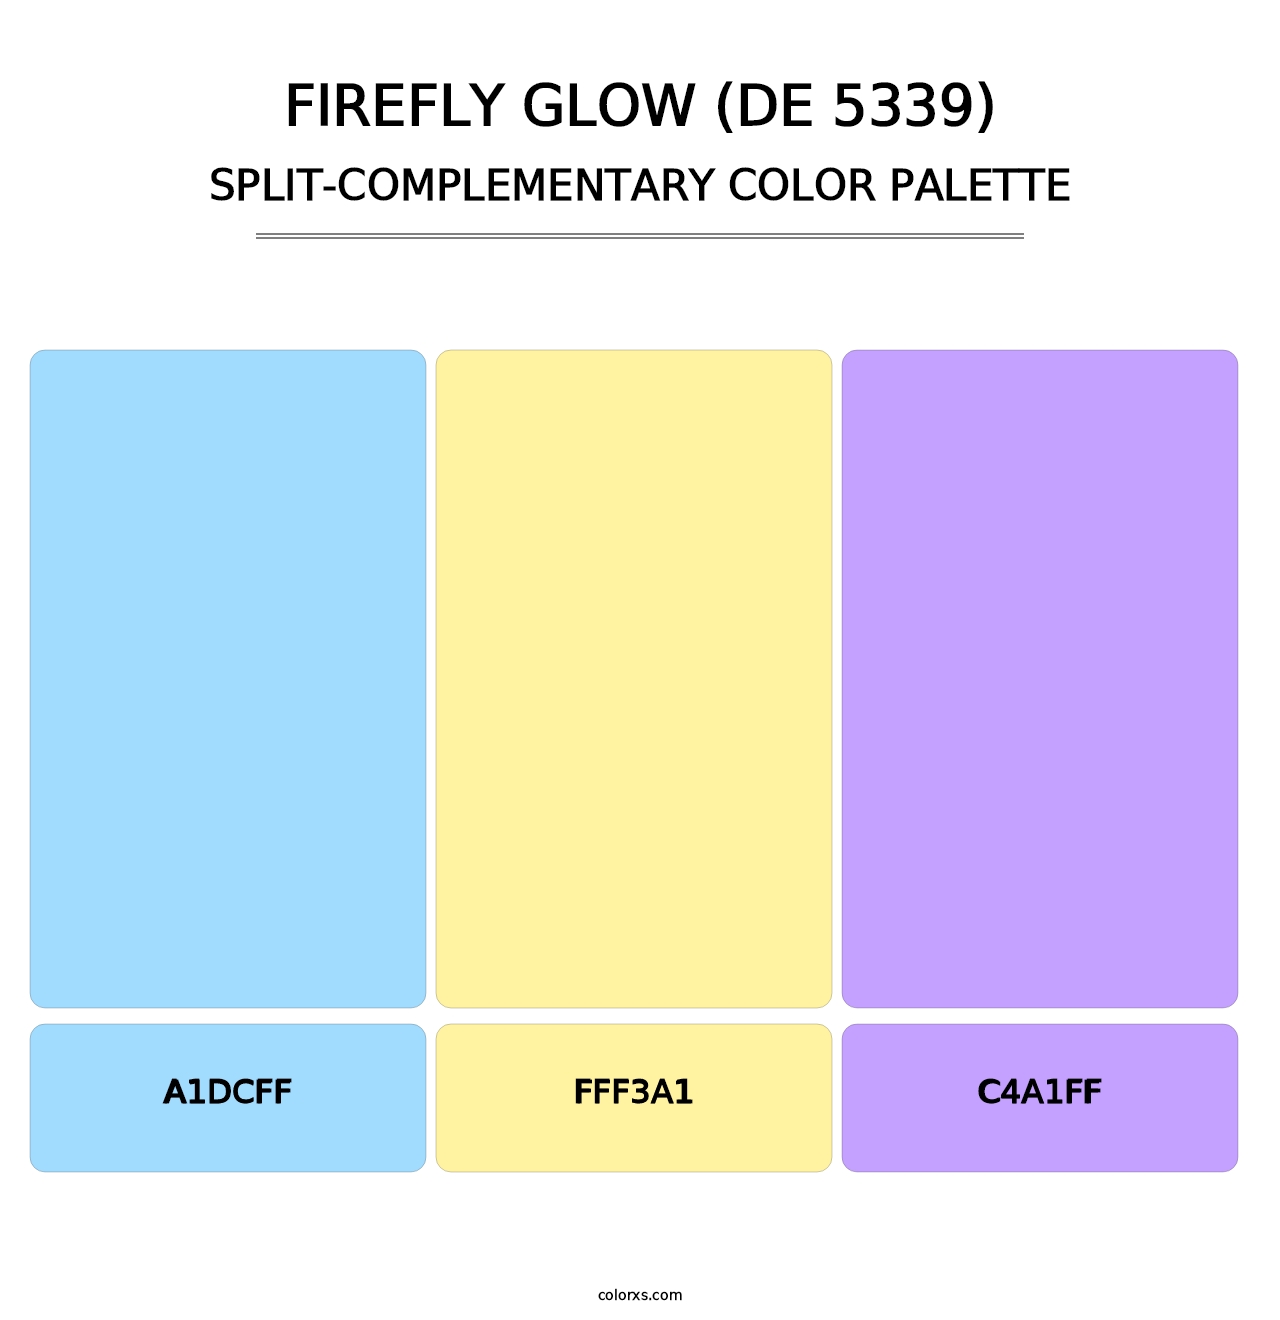 Firefly Glow (DE 5339) - Split-Complementary Color Palette